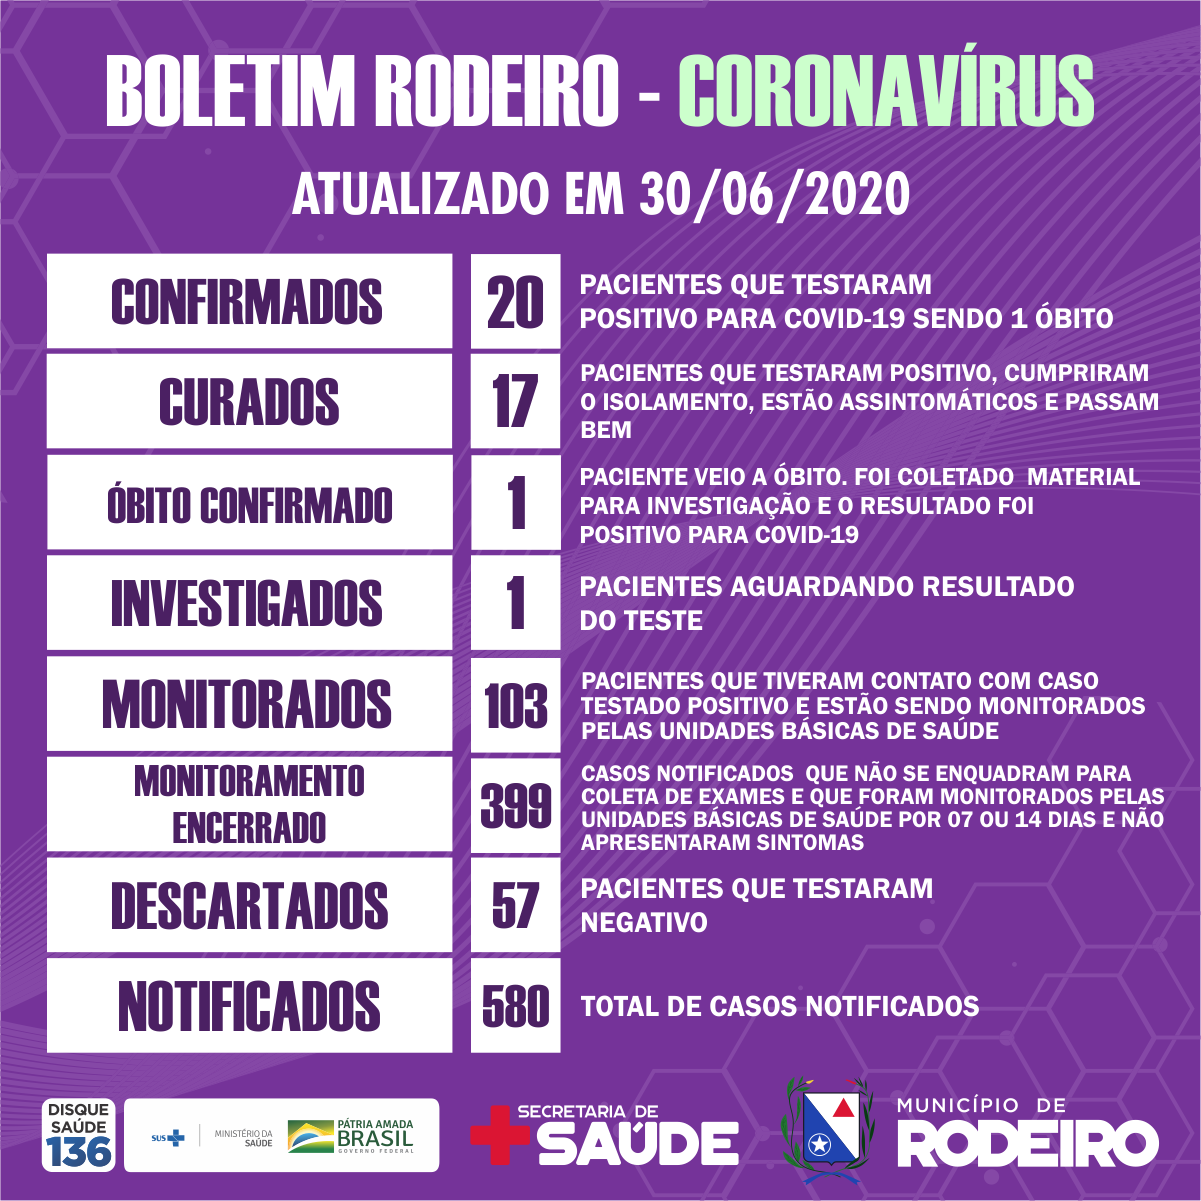 Boletim epidemiológico do Município de Rodeiro coronavírus, atualizado em 30/06/2020